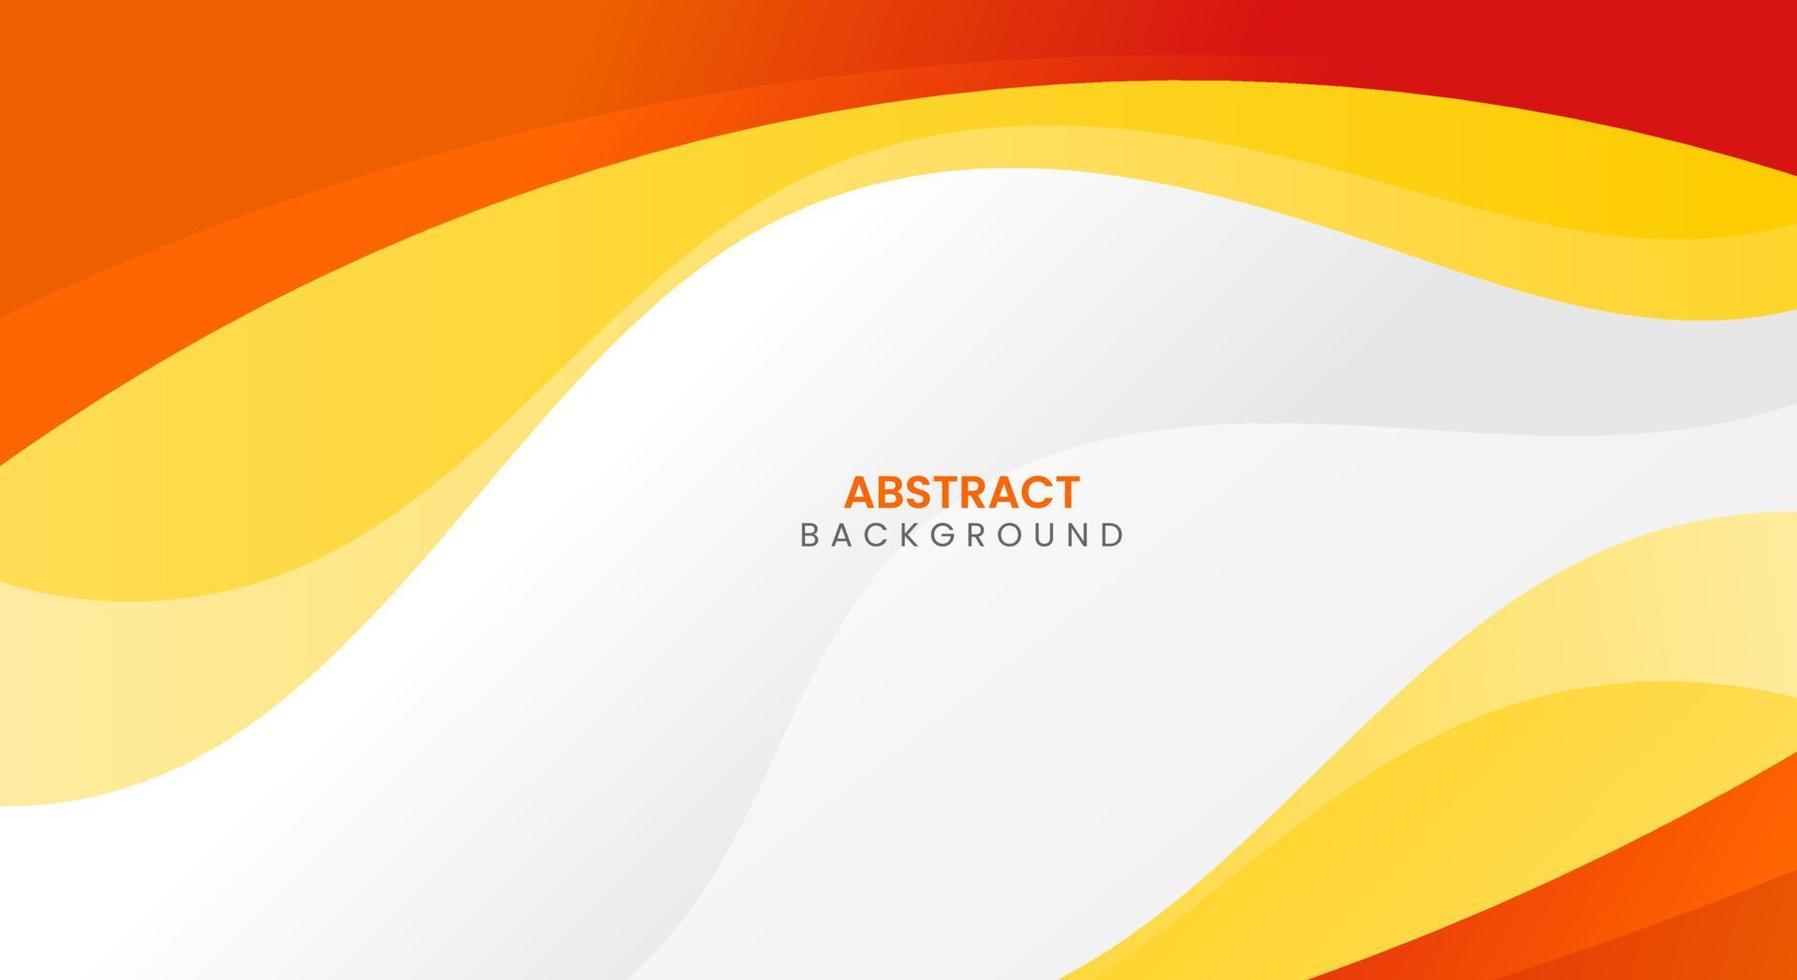 modern abstract kromme oranje en geel achtergrond vector